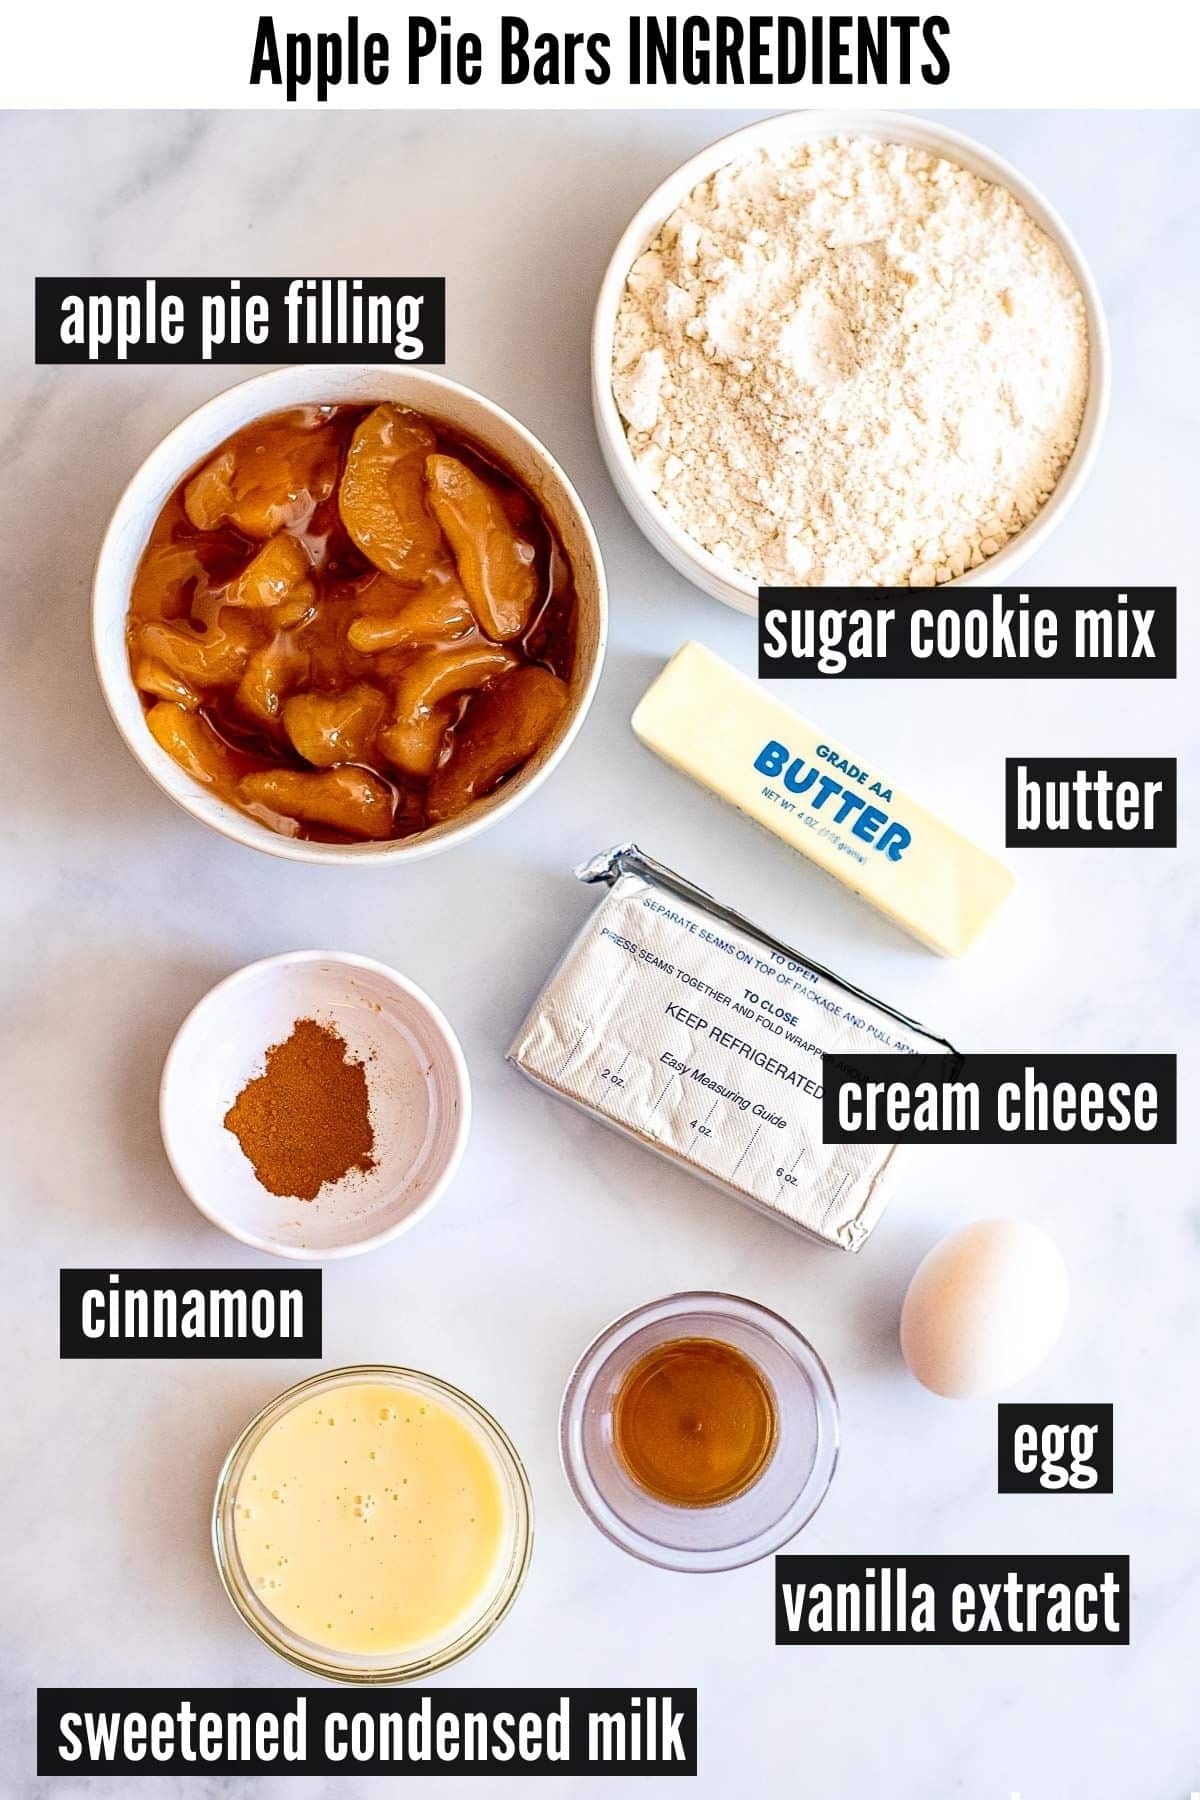 apple pie bars ingredients labelled